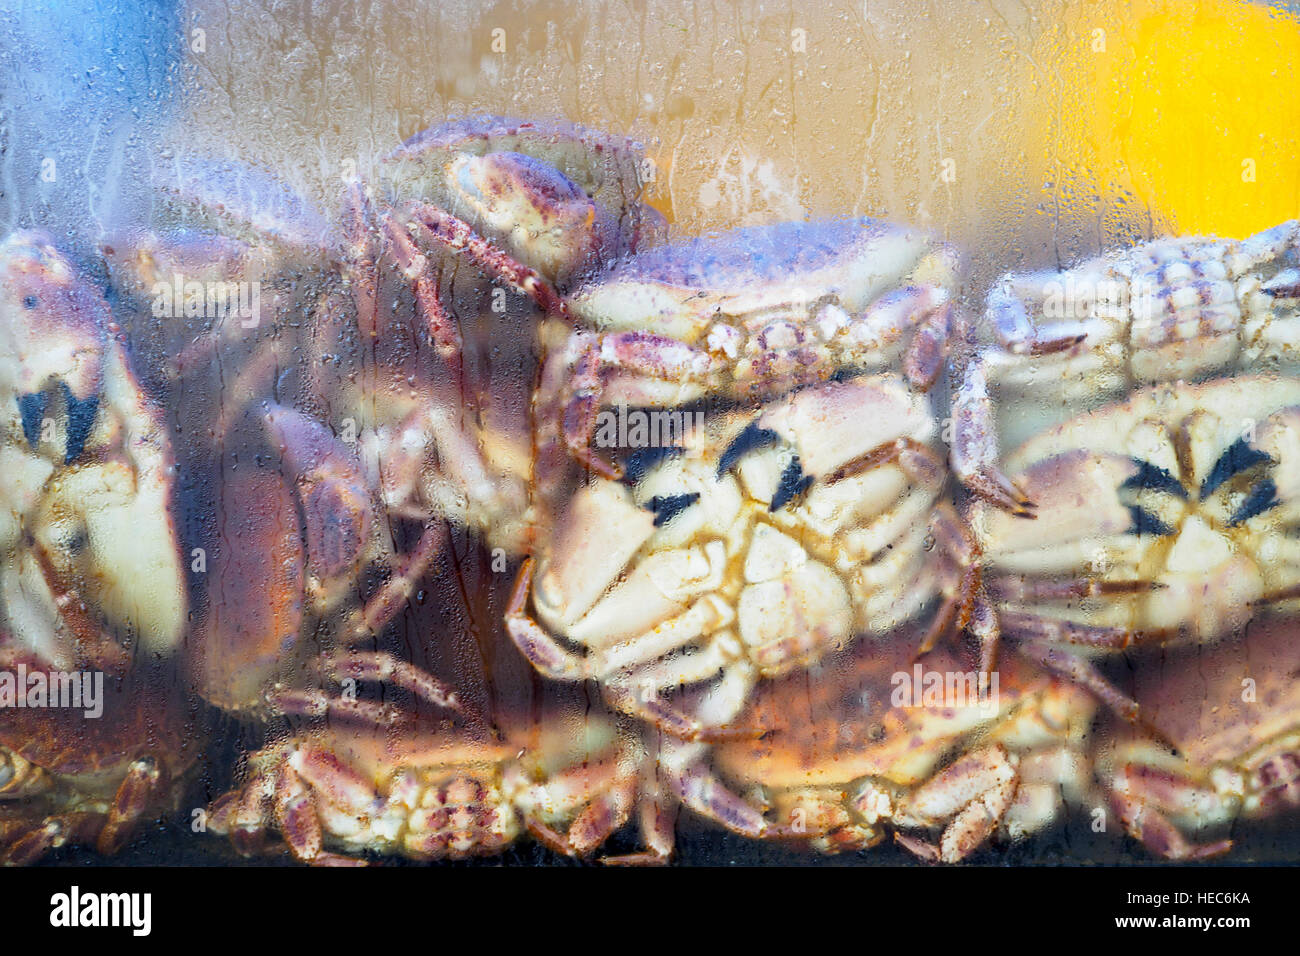 Les crabes dans un restaurant - région de l'Algarve, Portugal Banque D'Images